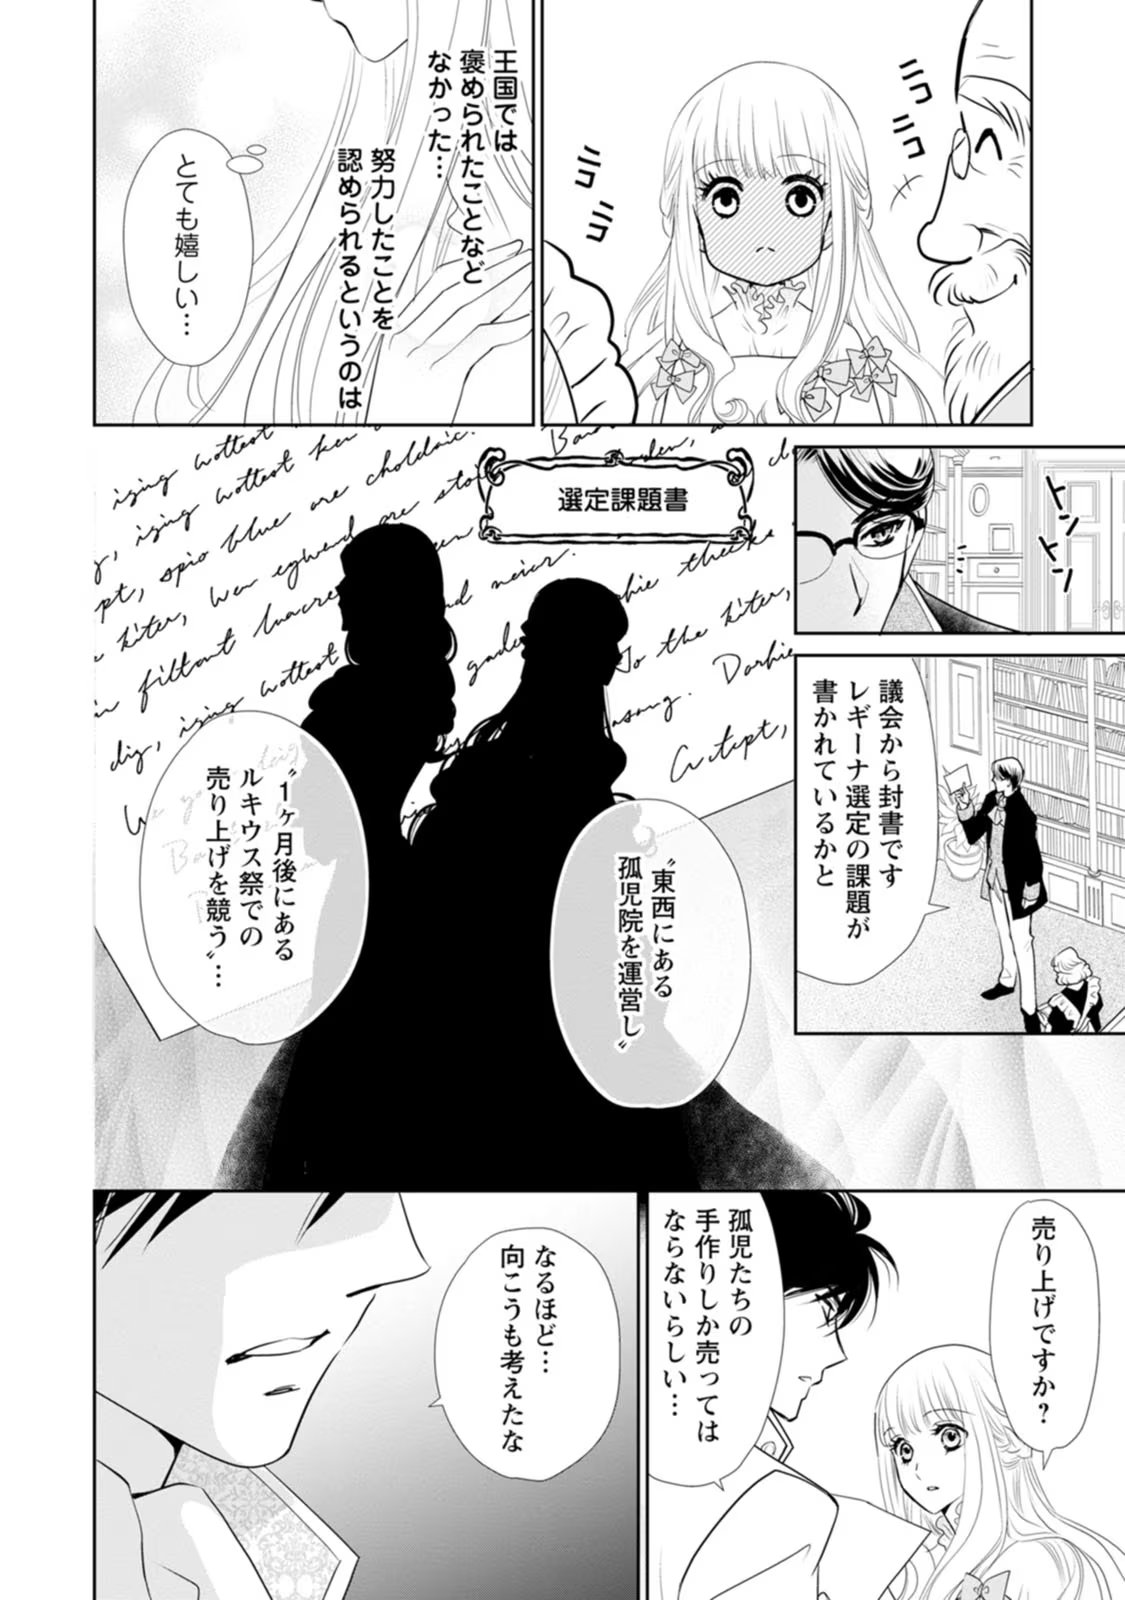 Shinjitsu no Ai wo Mitsuketa to Iwarete Konyaku Haki Saretanode, Fukuen wo Semararete mo Imasara mo Osoi desu! - Chapter 19 - Page 26